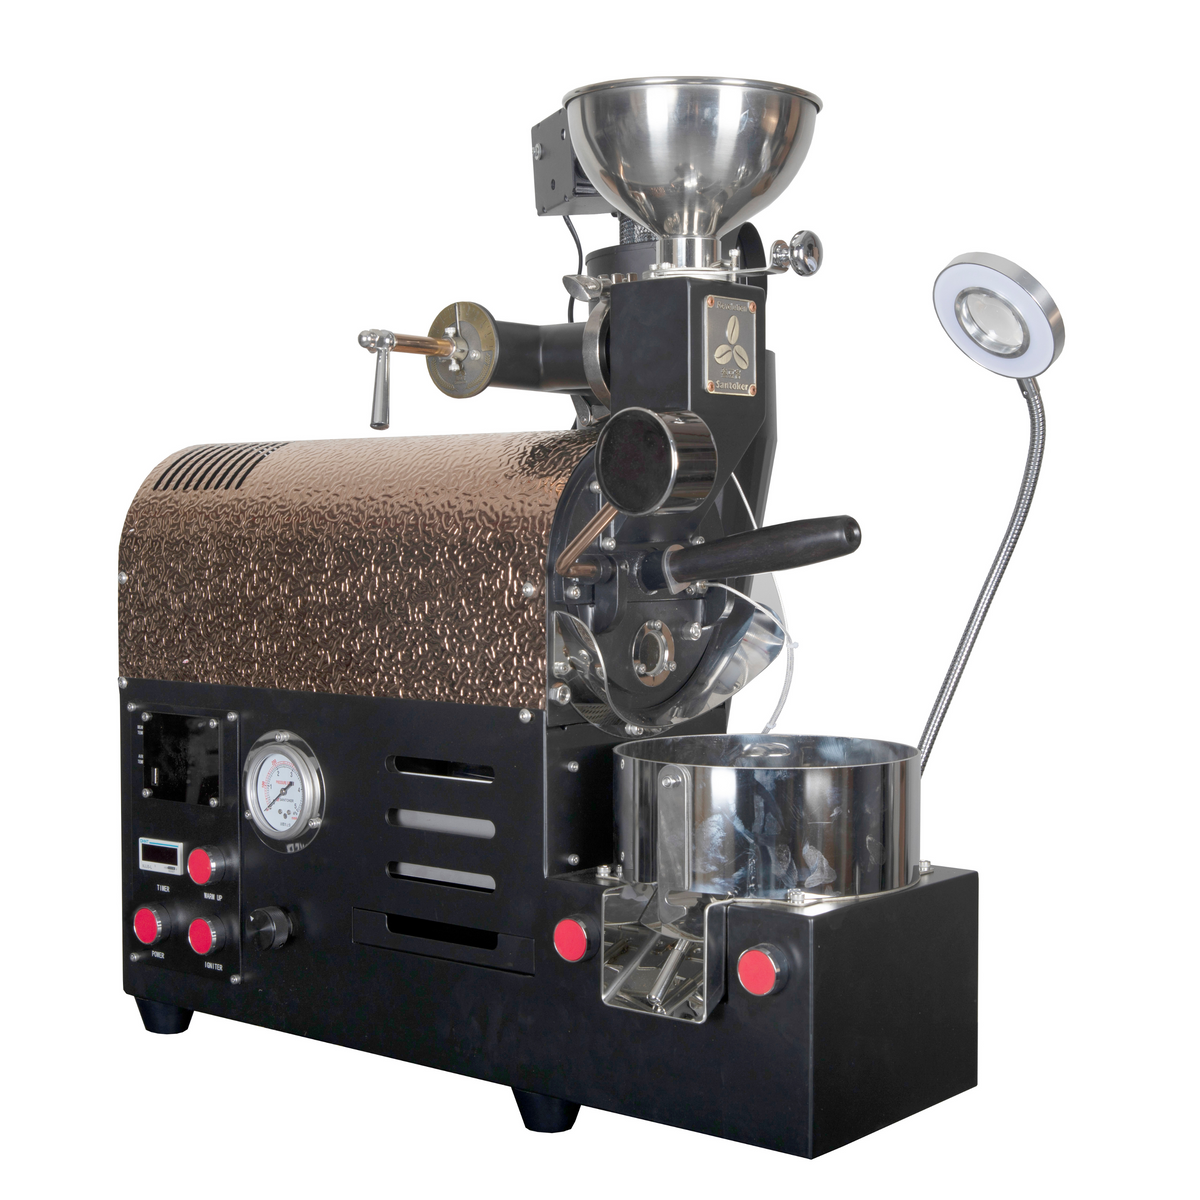 Santoker R300 咖啡烘焙机 - 500g/批